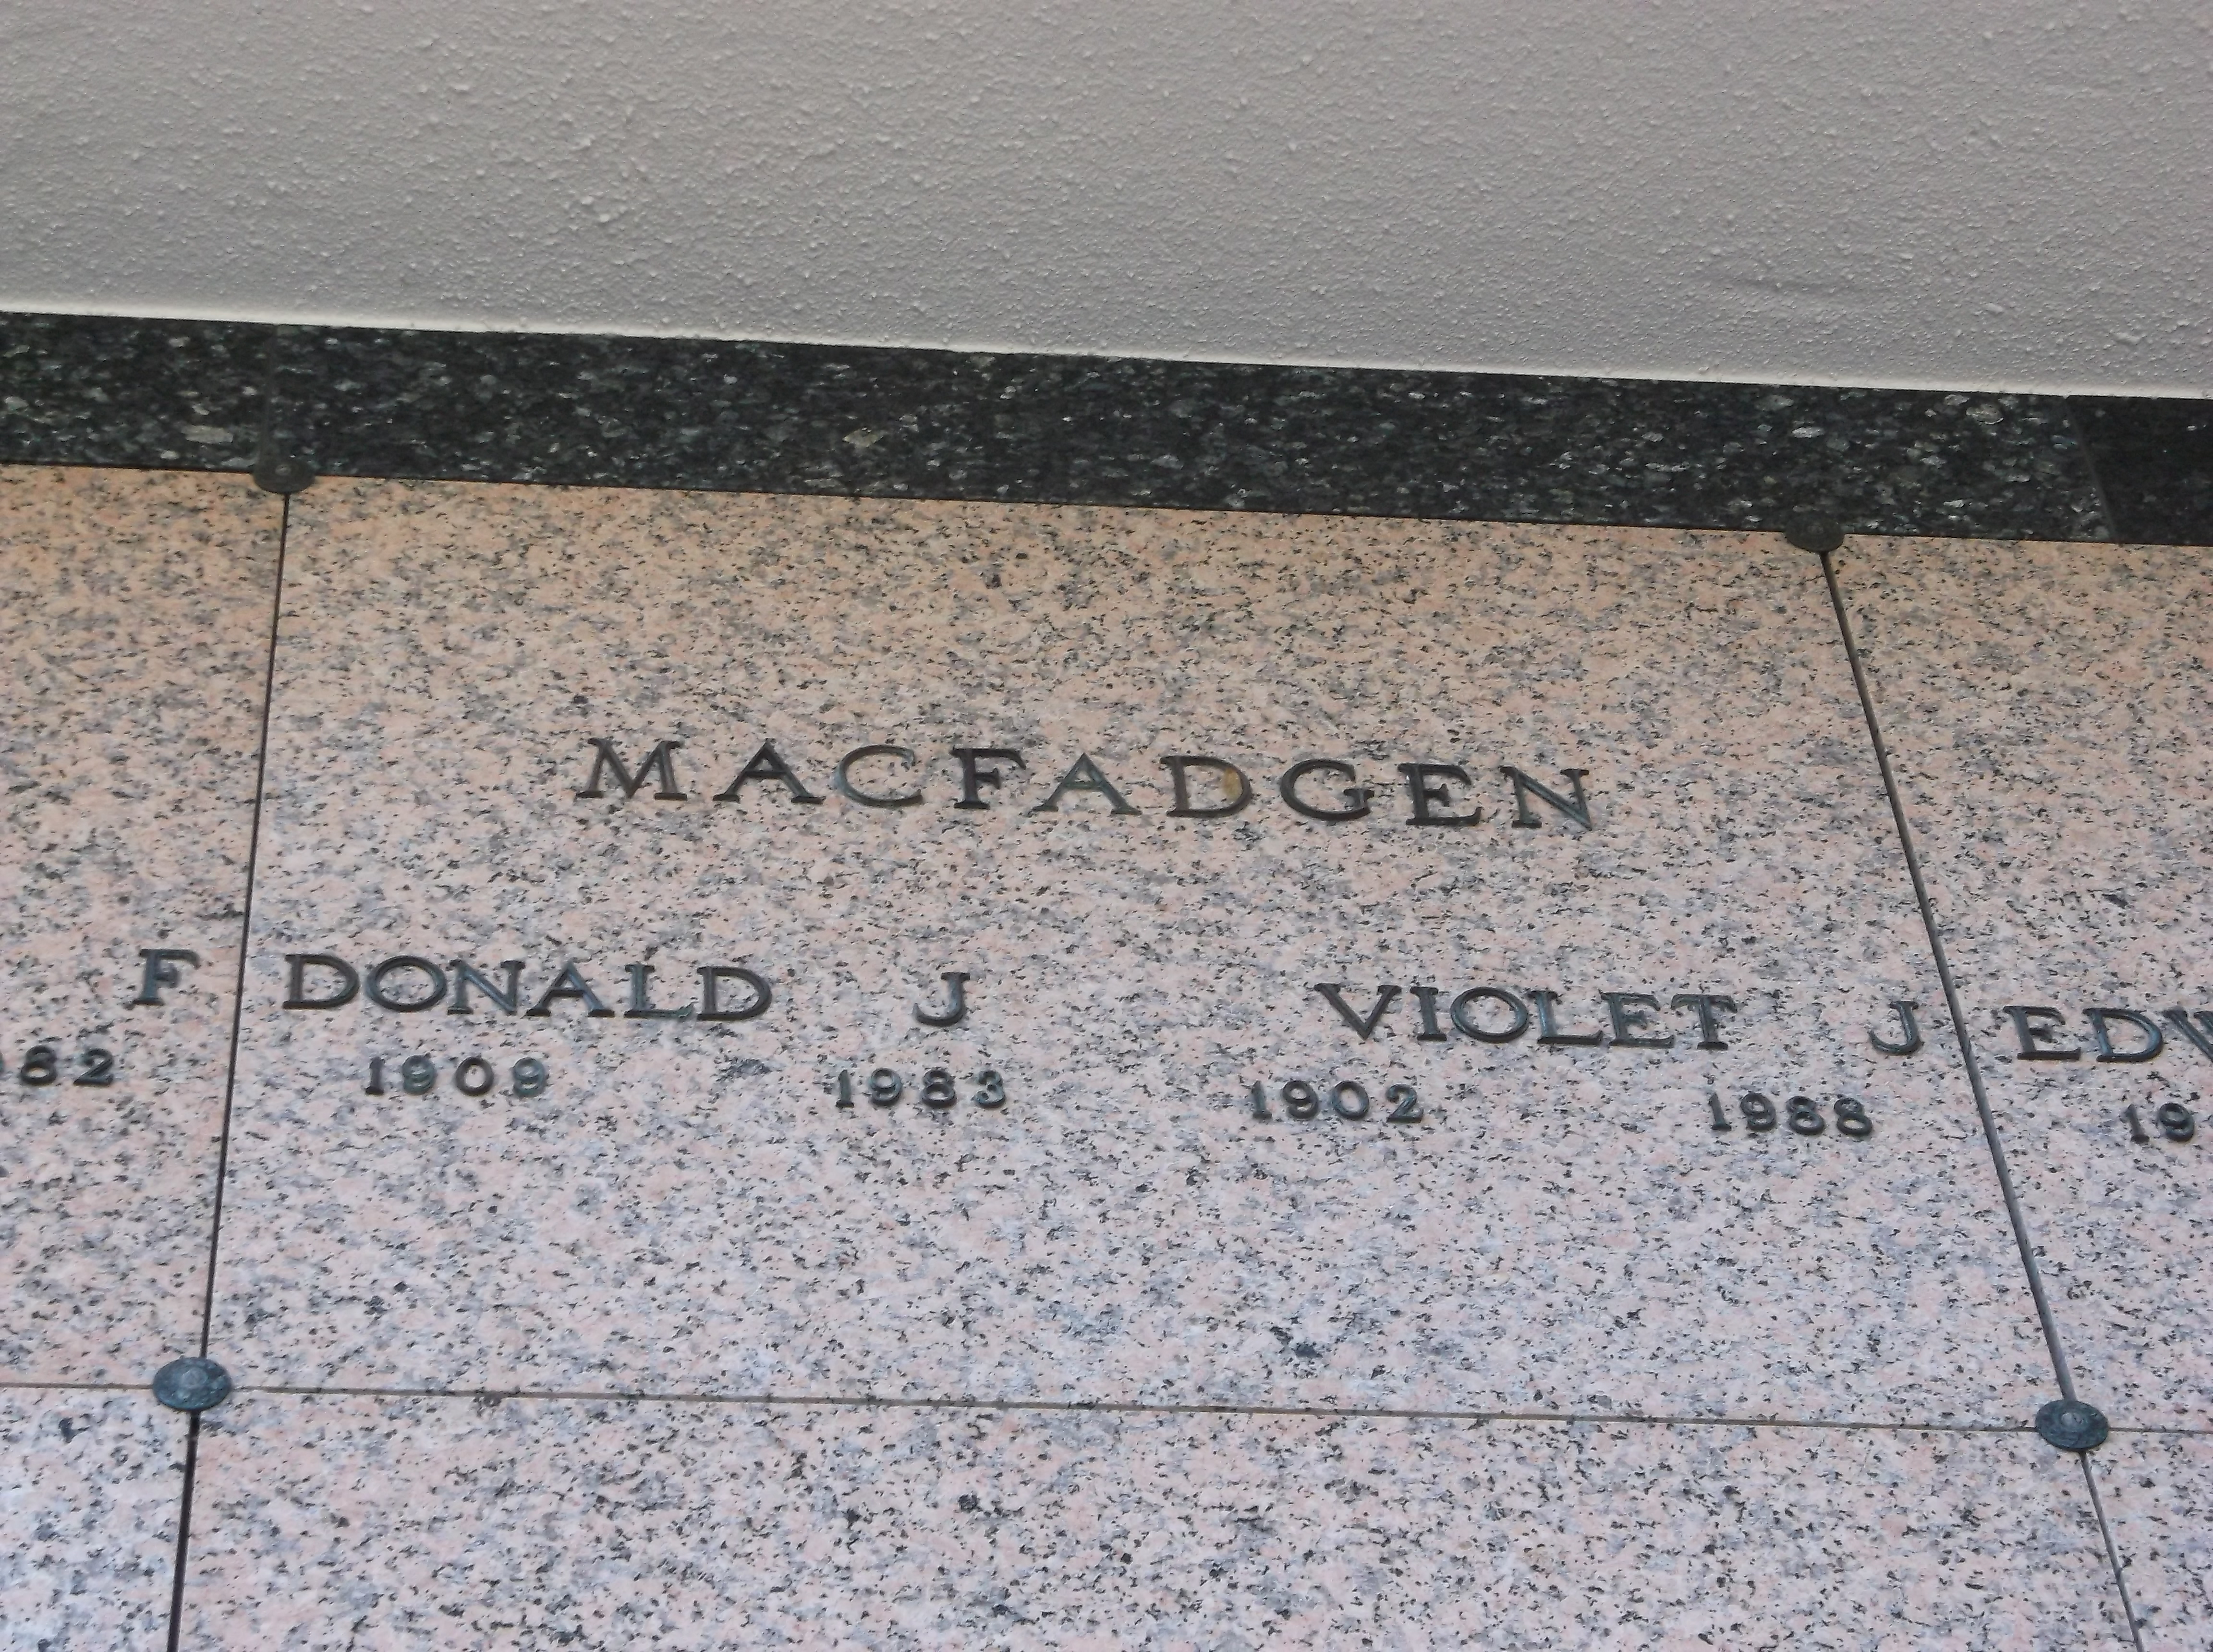 Donald J Macfadgen